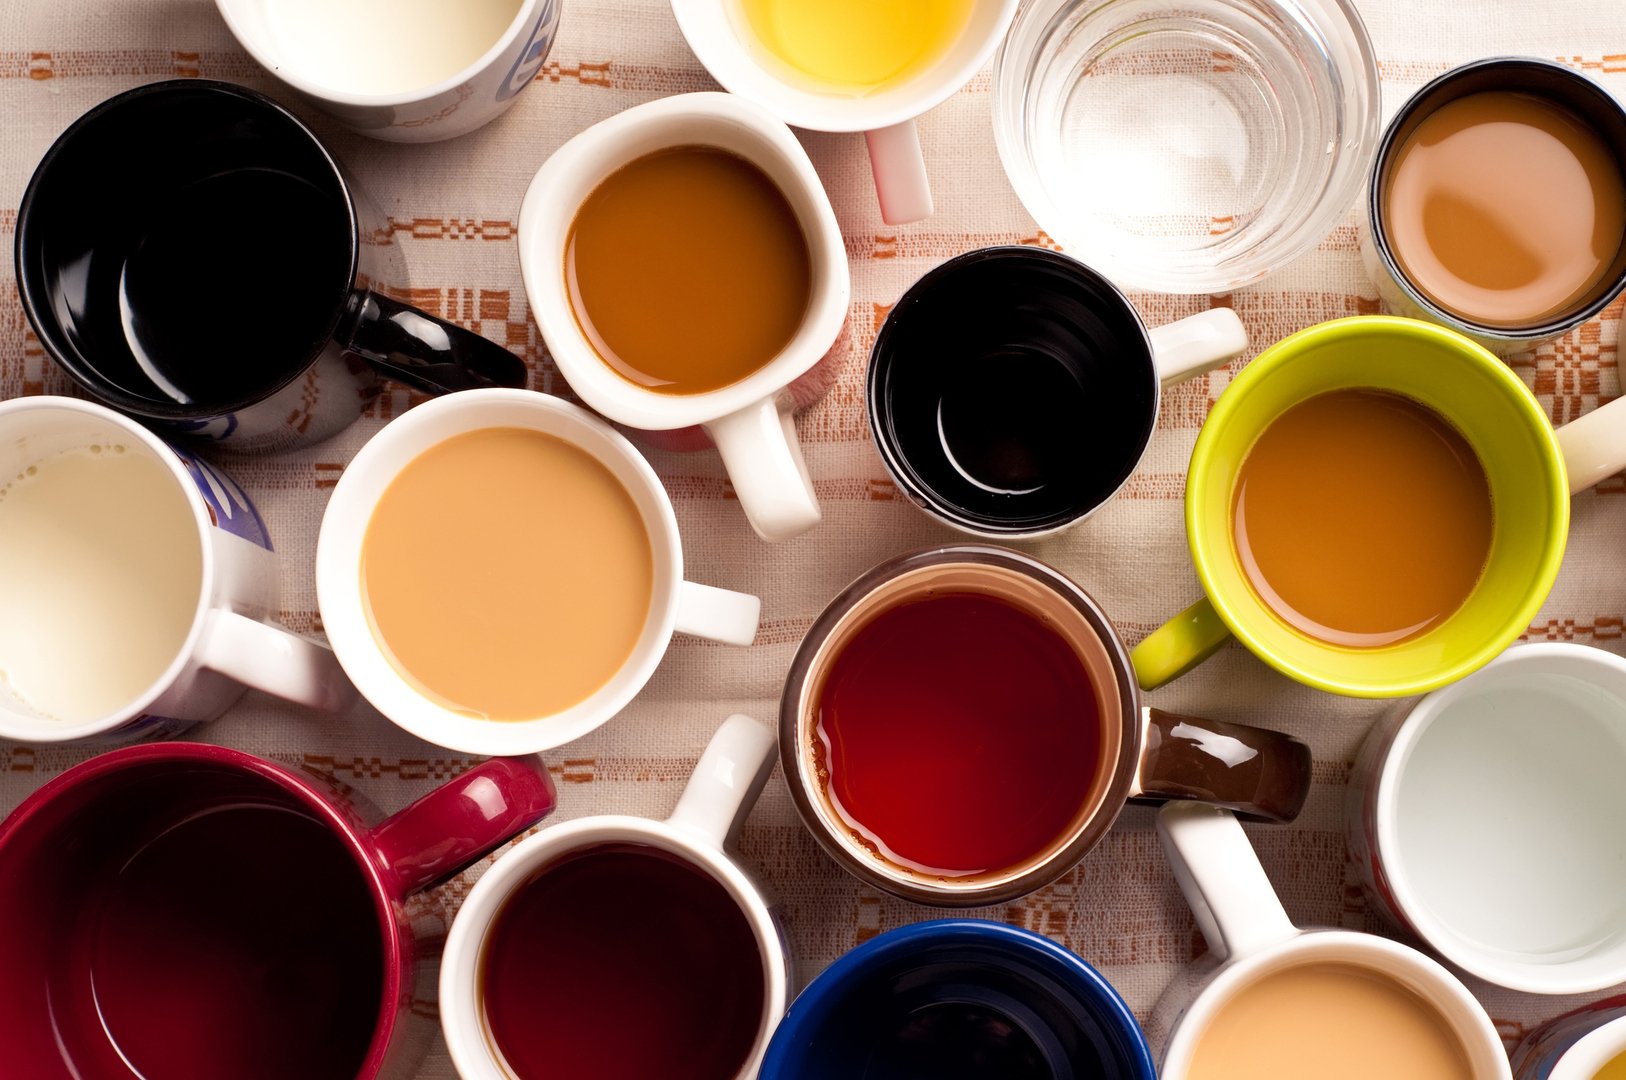 ما هي كمية الكافيين الموجودة في القهوة والشاي ومشروبات الحمية الغازية؟